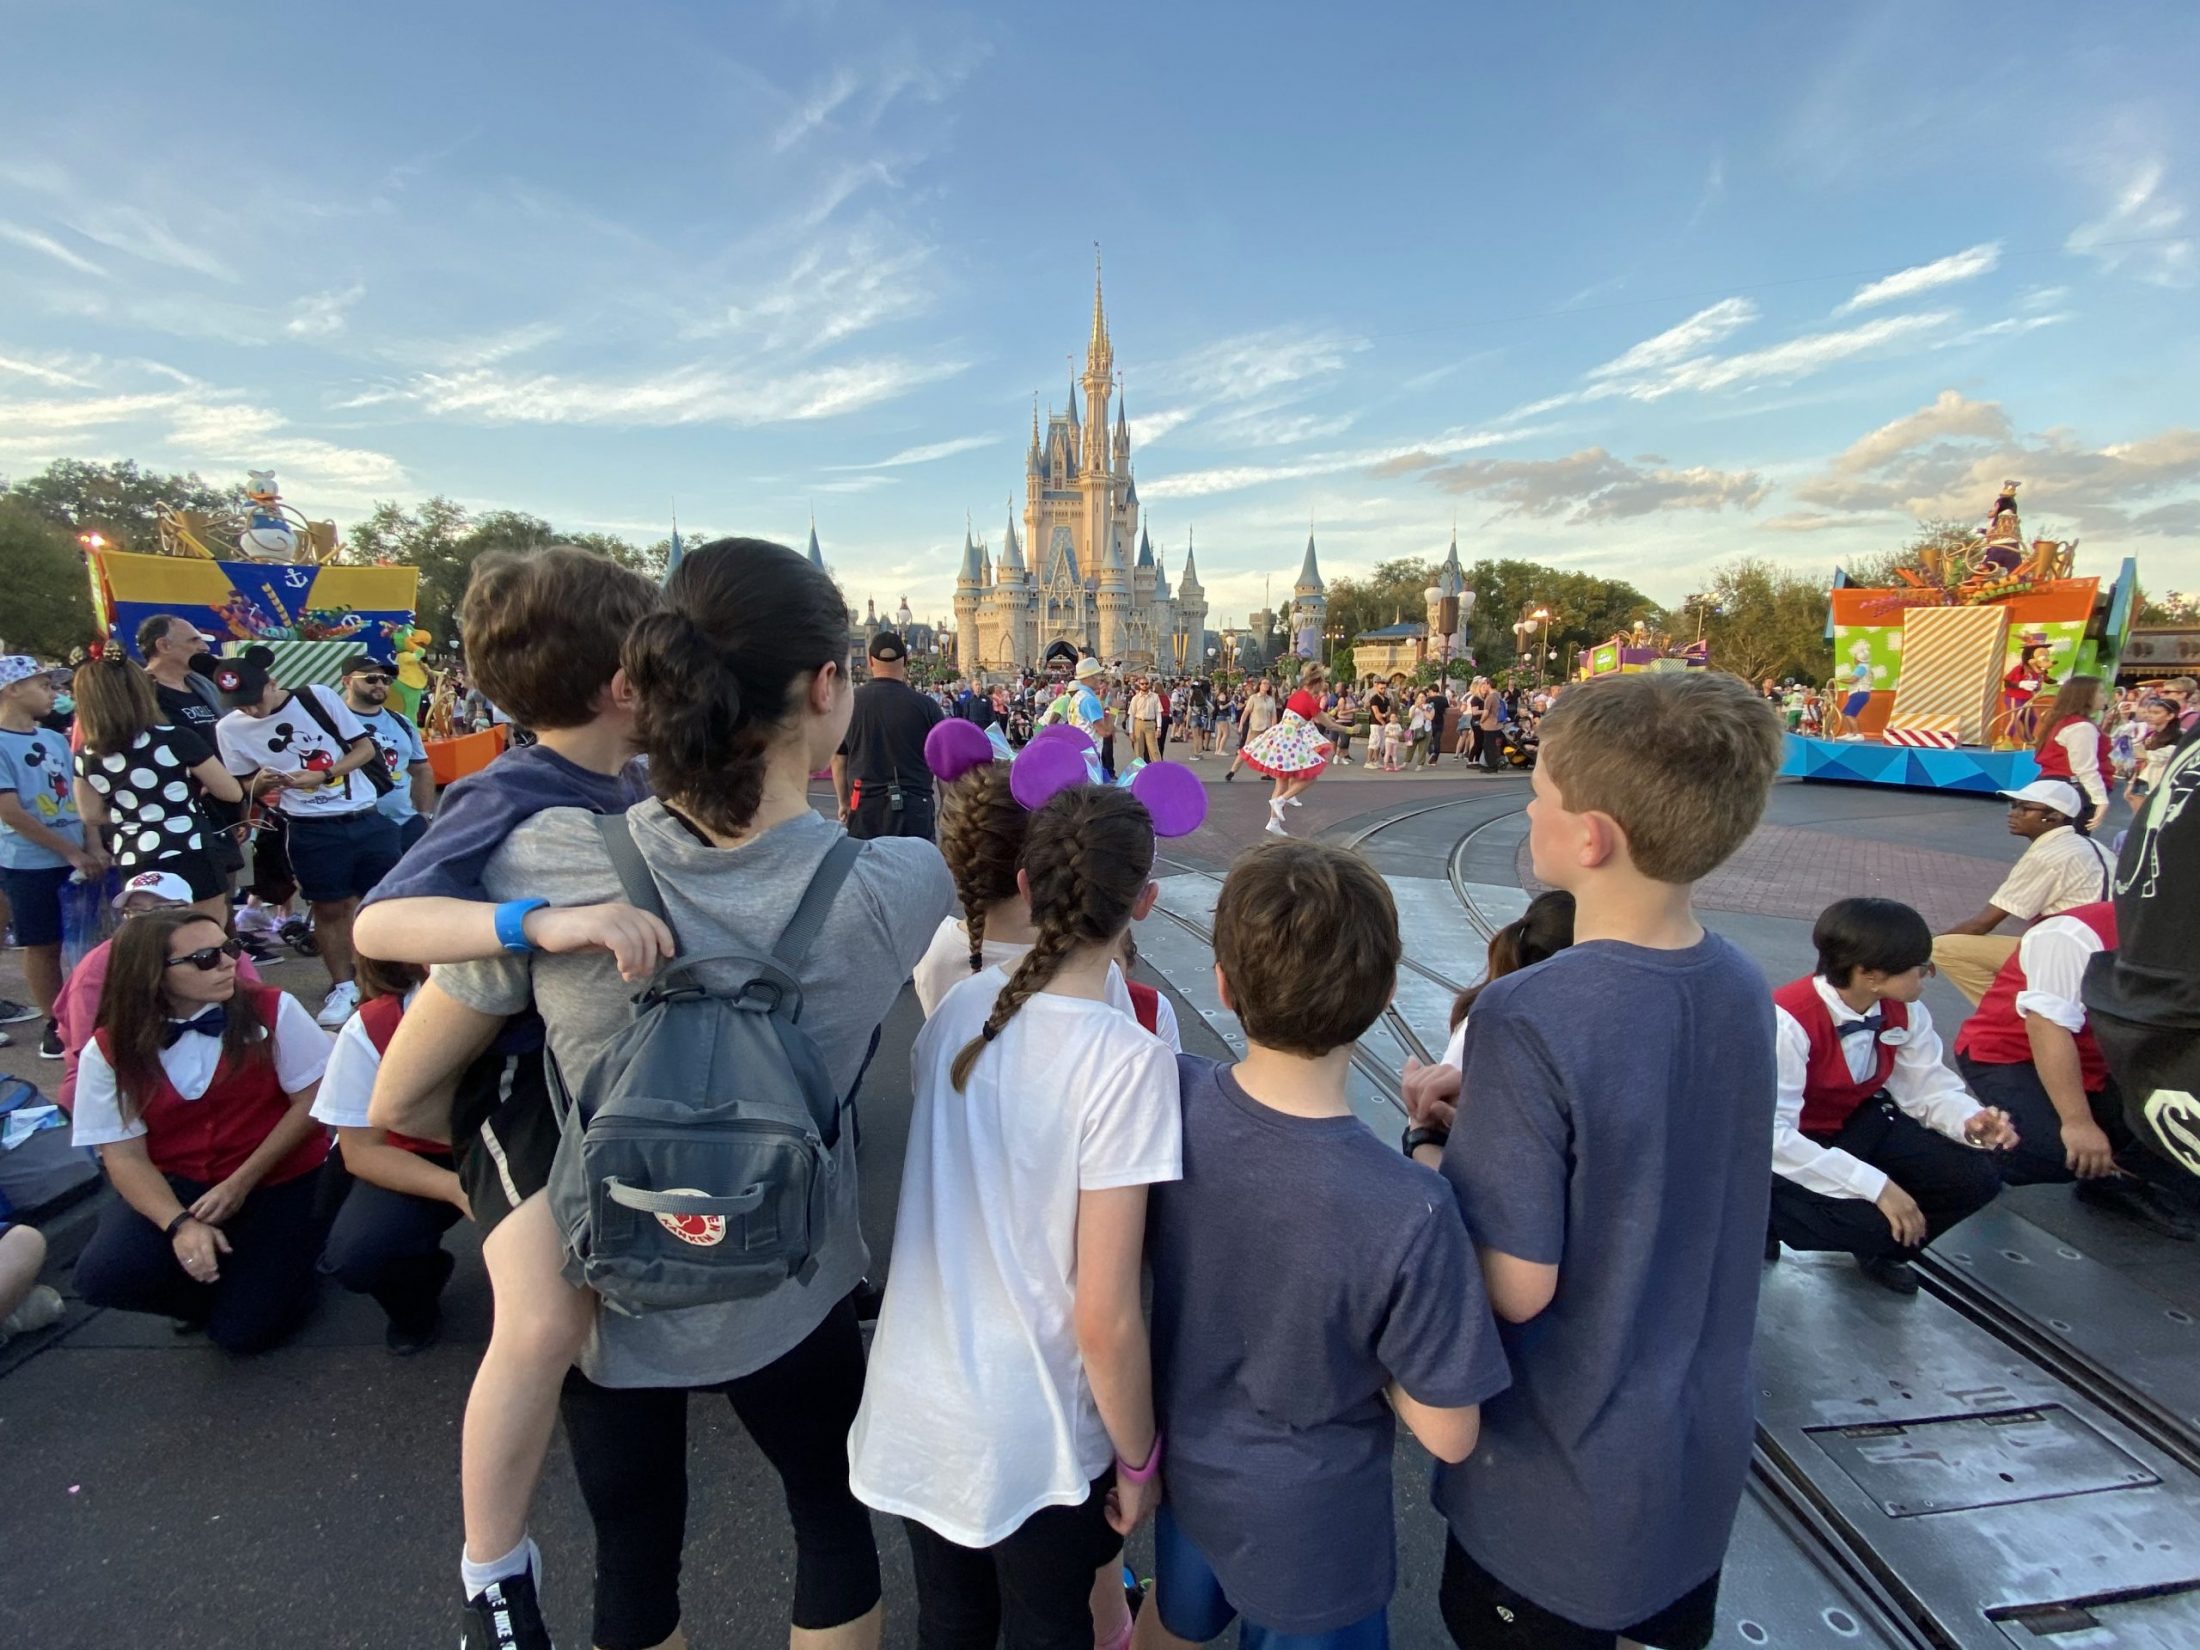 DC widow blog writer Marjorie Brimley faces DisneyWorld castle with children